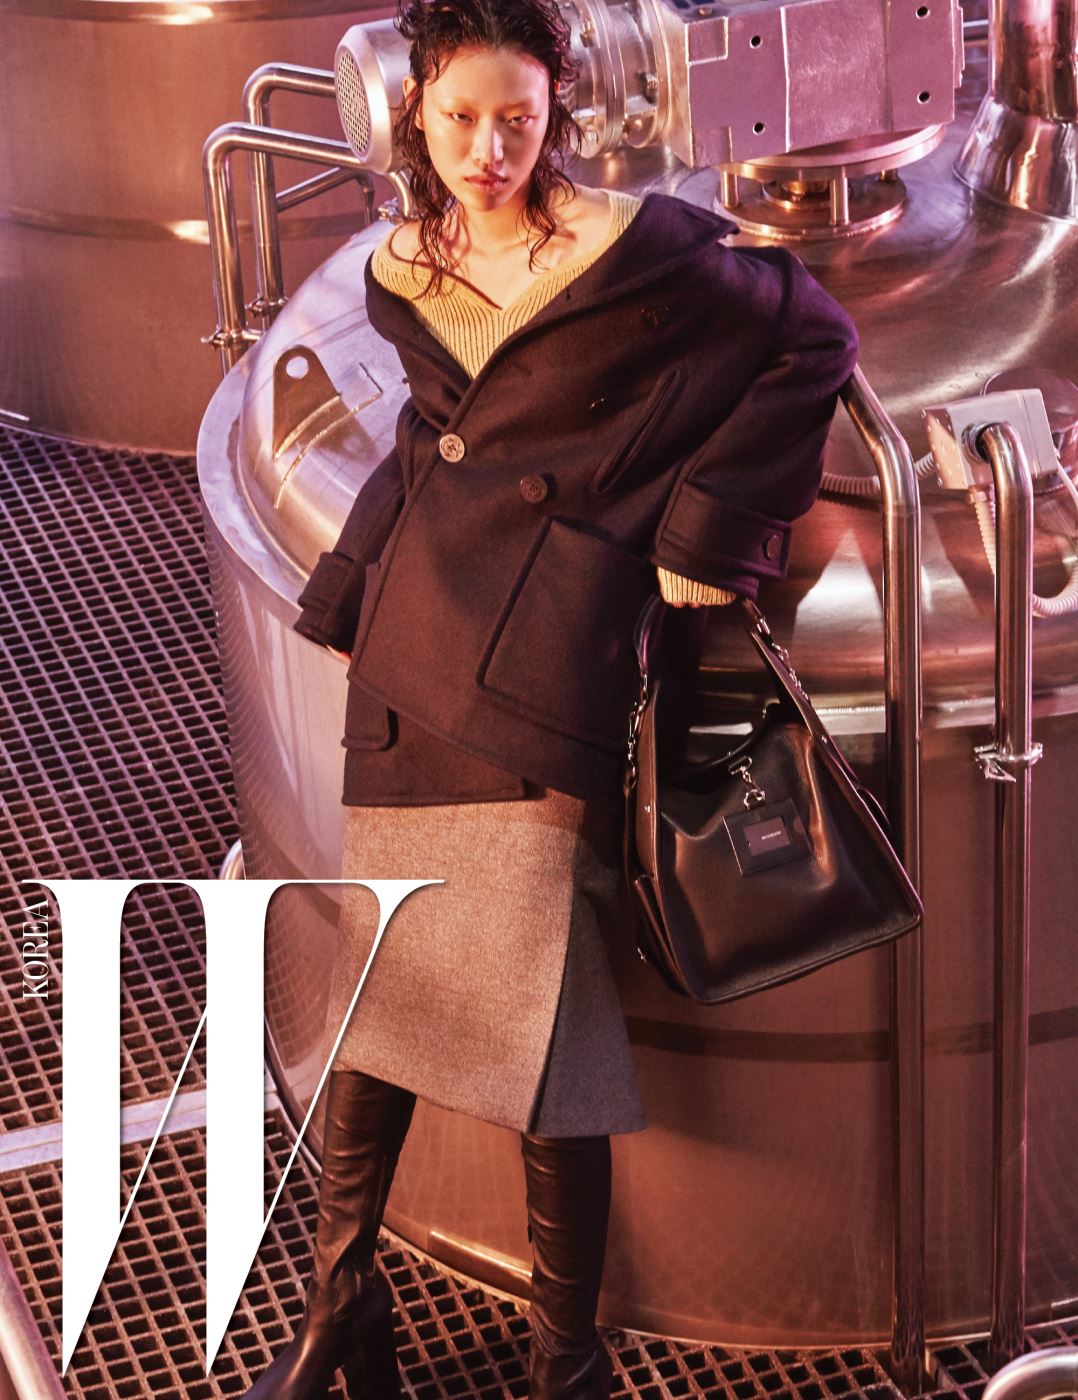 남색 스윙 피 코트, 베이지색 하트넥 니트 톱, 모직 소재의 회색 킥 스커트, 검정 플랫폼 사이하이 부츠, 검은색 툴 숄더백은 모두 Balenciaga 제품.